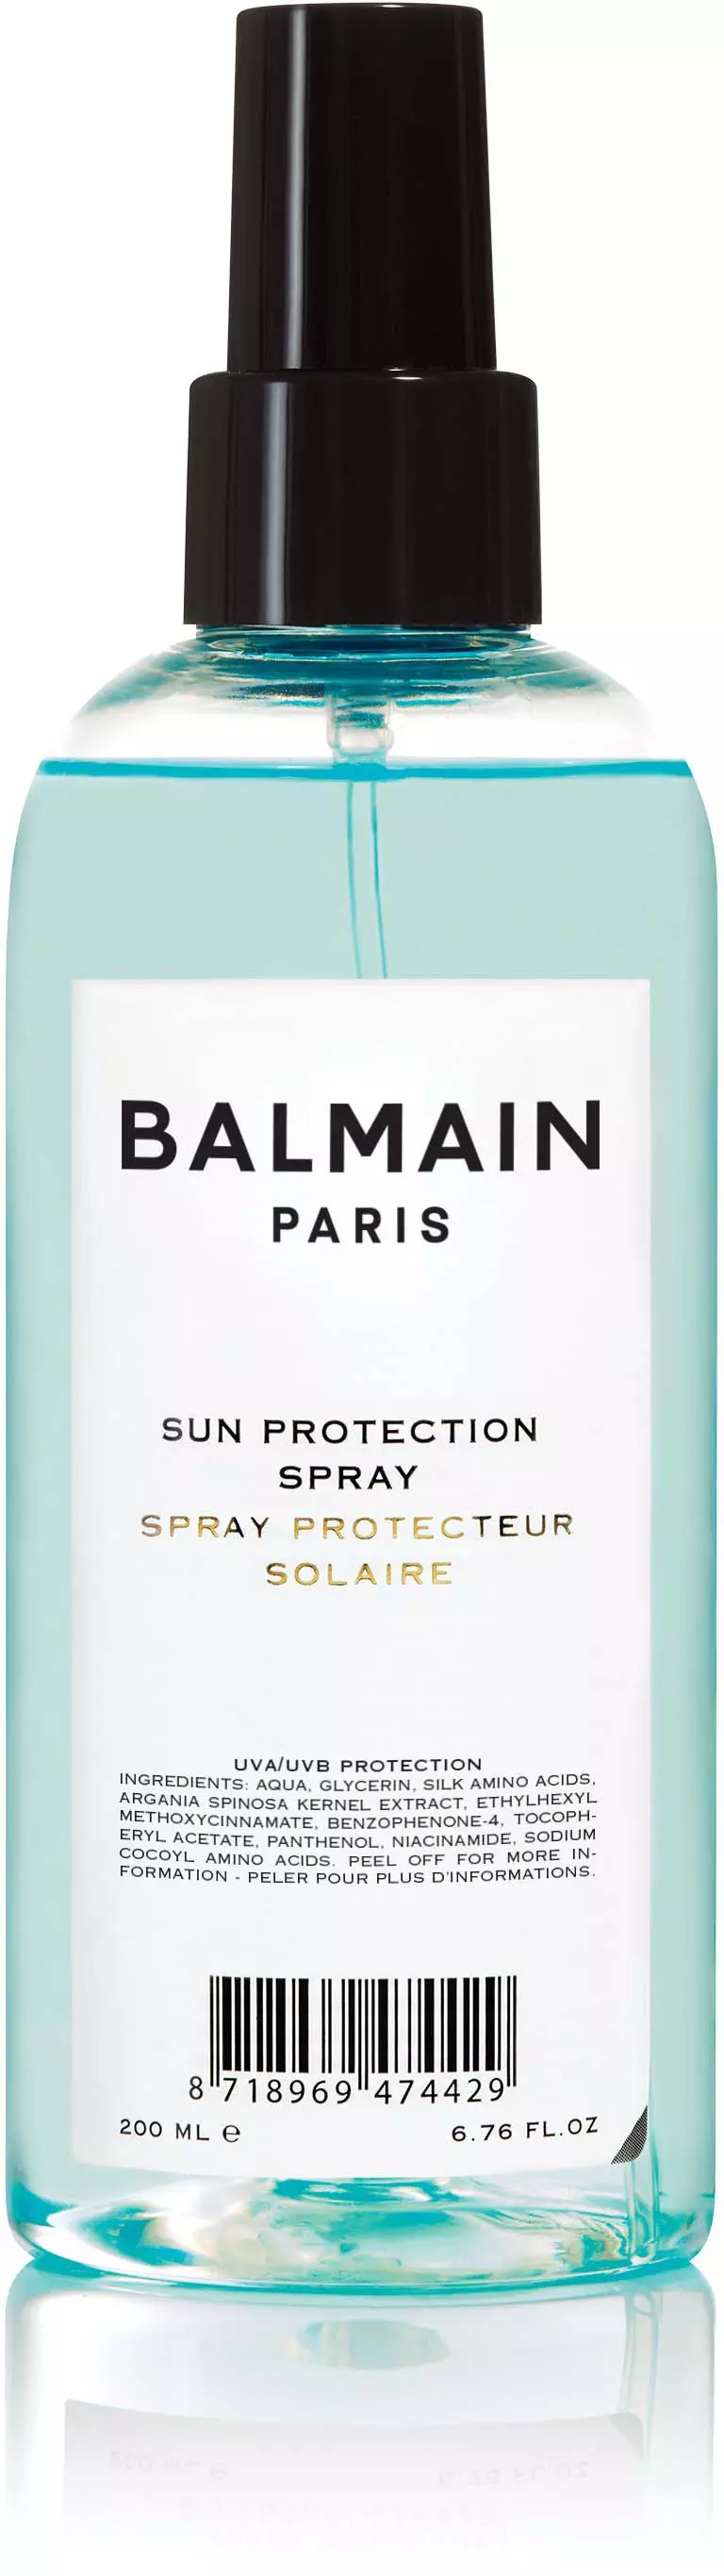 Balmain Paris Sun Protection Spray Ml